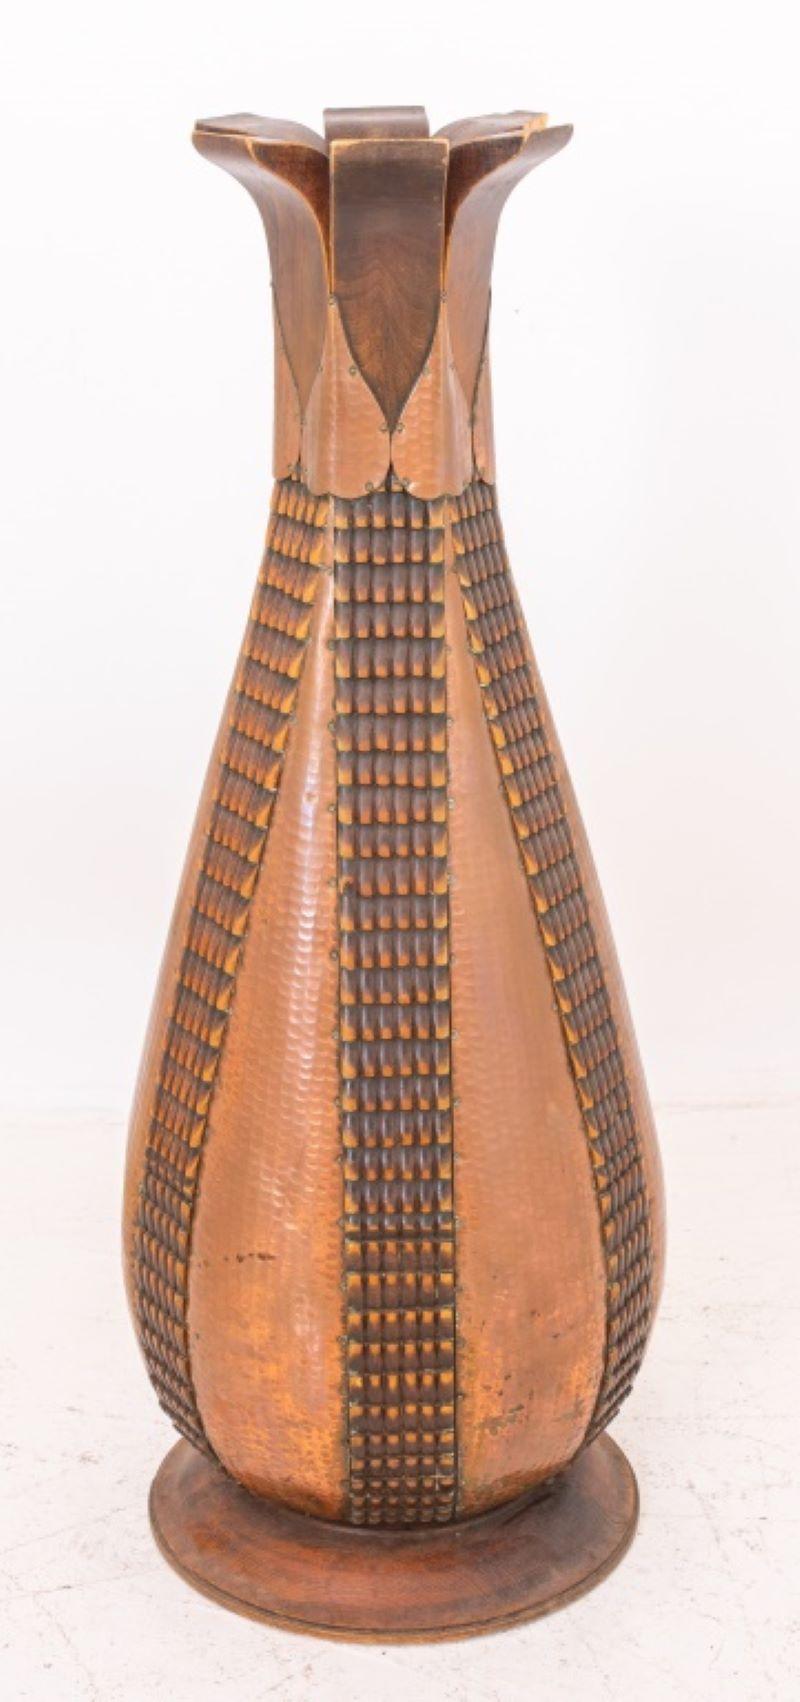 Monumental Secessionist Jugendstil carved wood vase with applied hammered brass decor.

Dealer: S138XX.